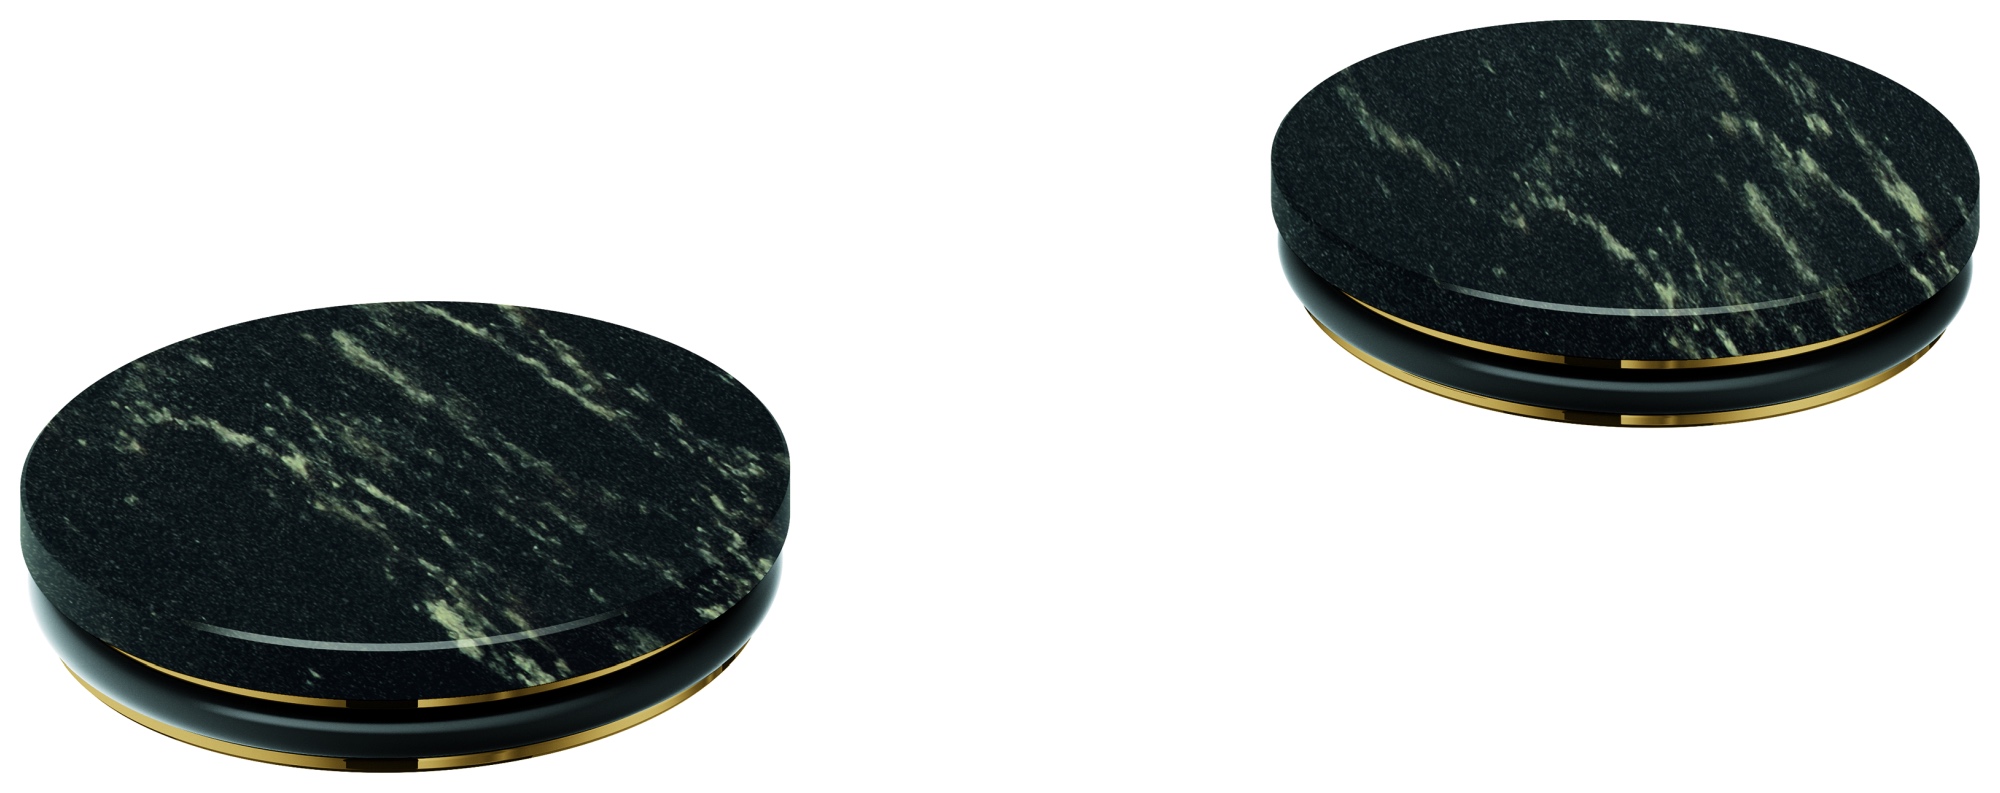 Einlagen Atrio Private Collection 48461, Material: Vanilla Noir Caesarstone Quarzverbundwerkstoff, für Knopfbetätigungen 20 595 und 20 589, chrom